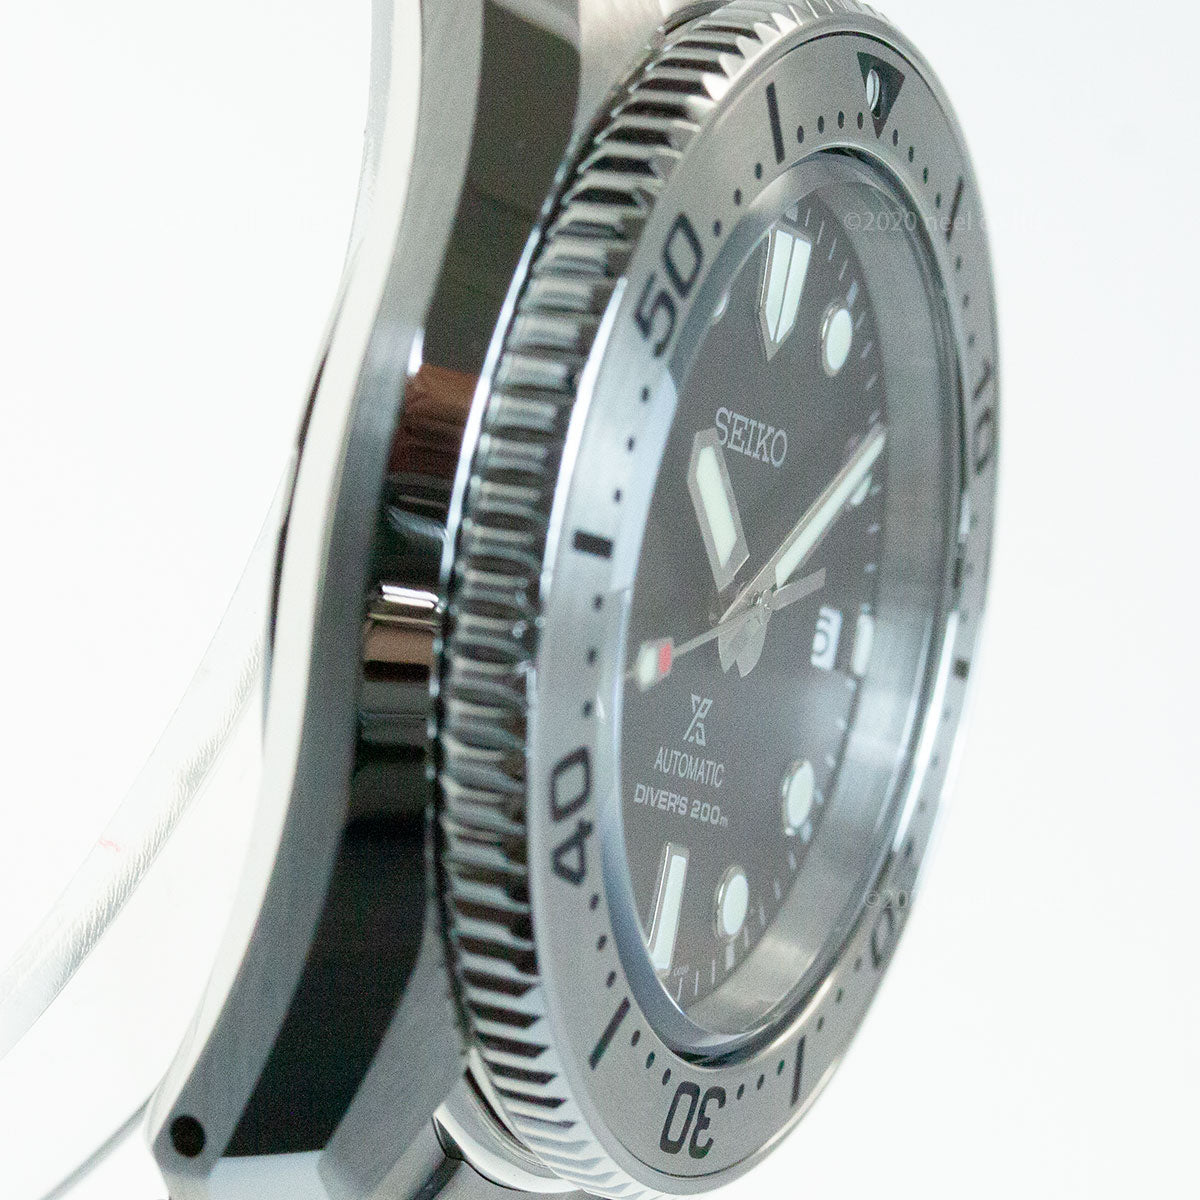 セイコー プロスペックス SEIKO PROSPEX ダイバースキューバ メカニカル 自動巻き コアショップ専用モデル 腕時計 メンズ SBDC125 1968メカニカルダイバーズ 現代デザイン